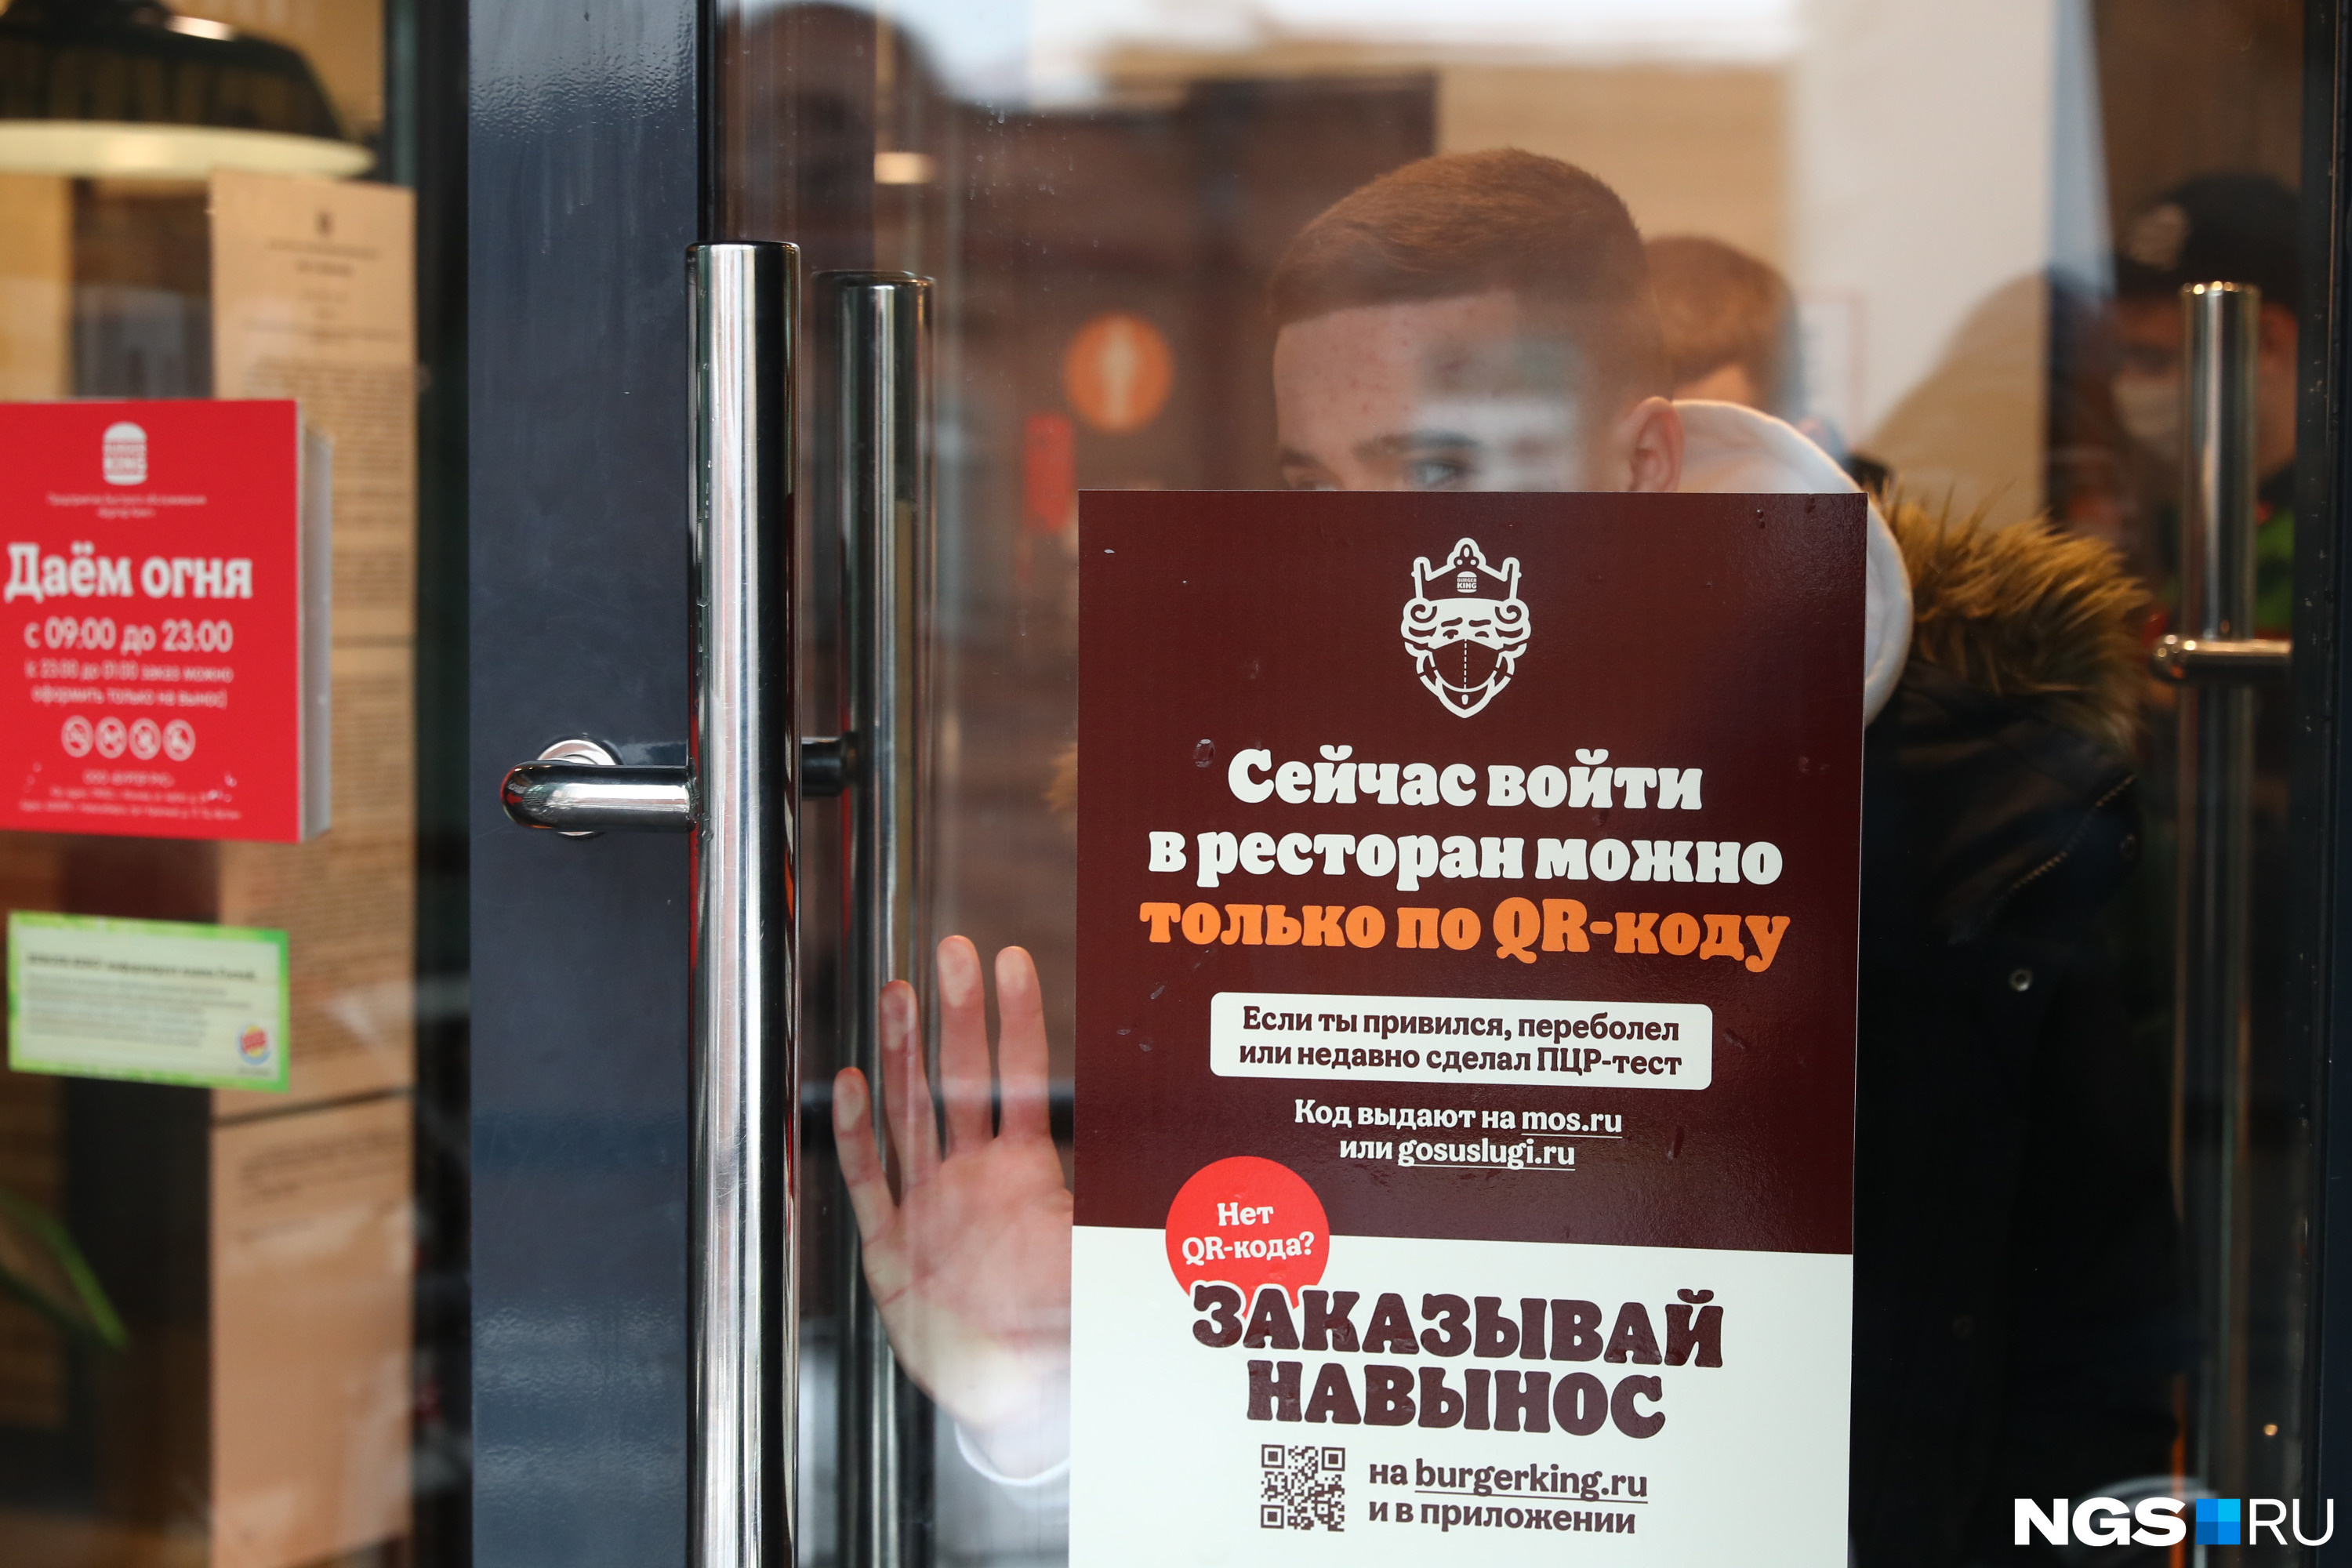 Объявление о новых правилах работы на дверях «Бургер Кинга»